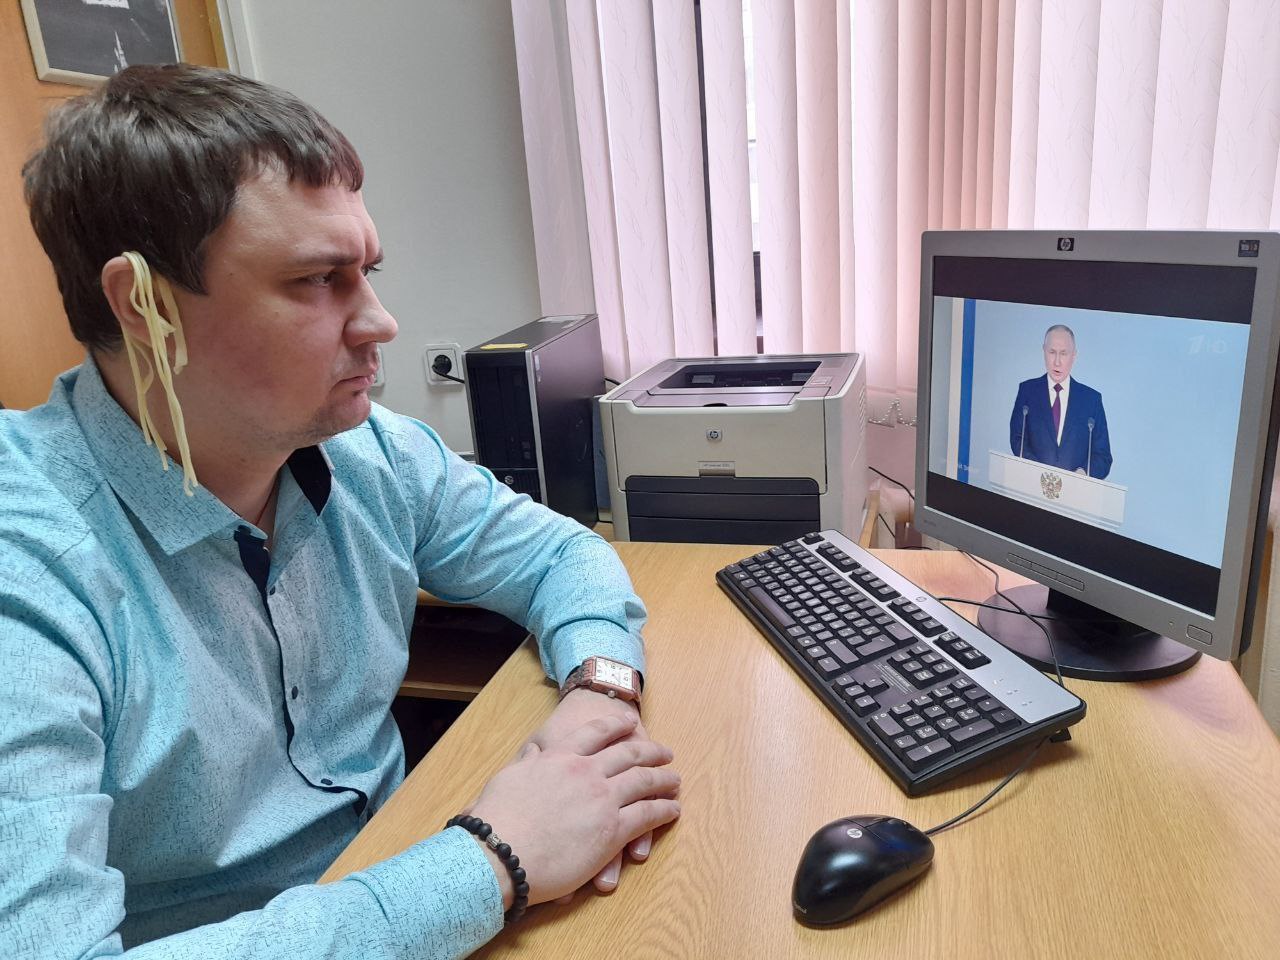 Российский депутат посмотрел послание Путина с лапшой на ушах (видео)